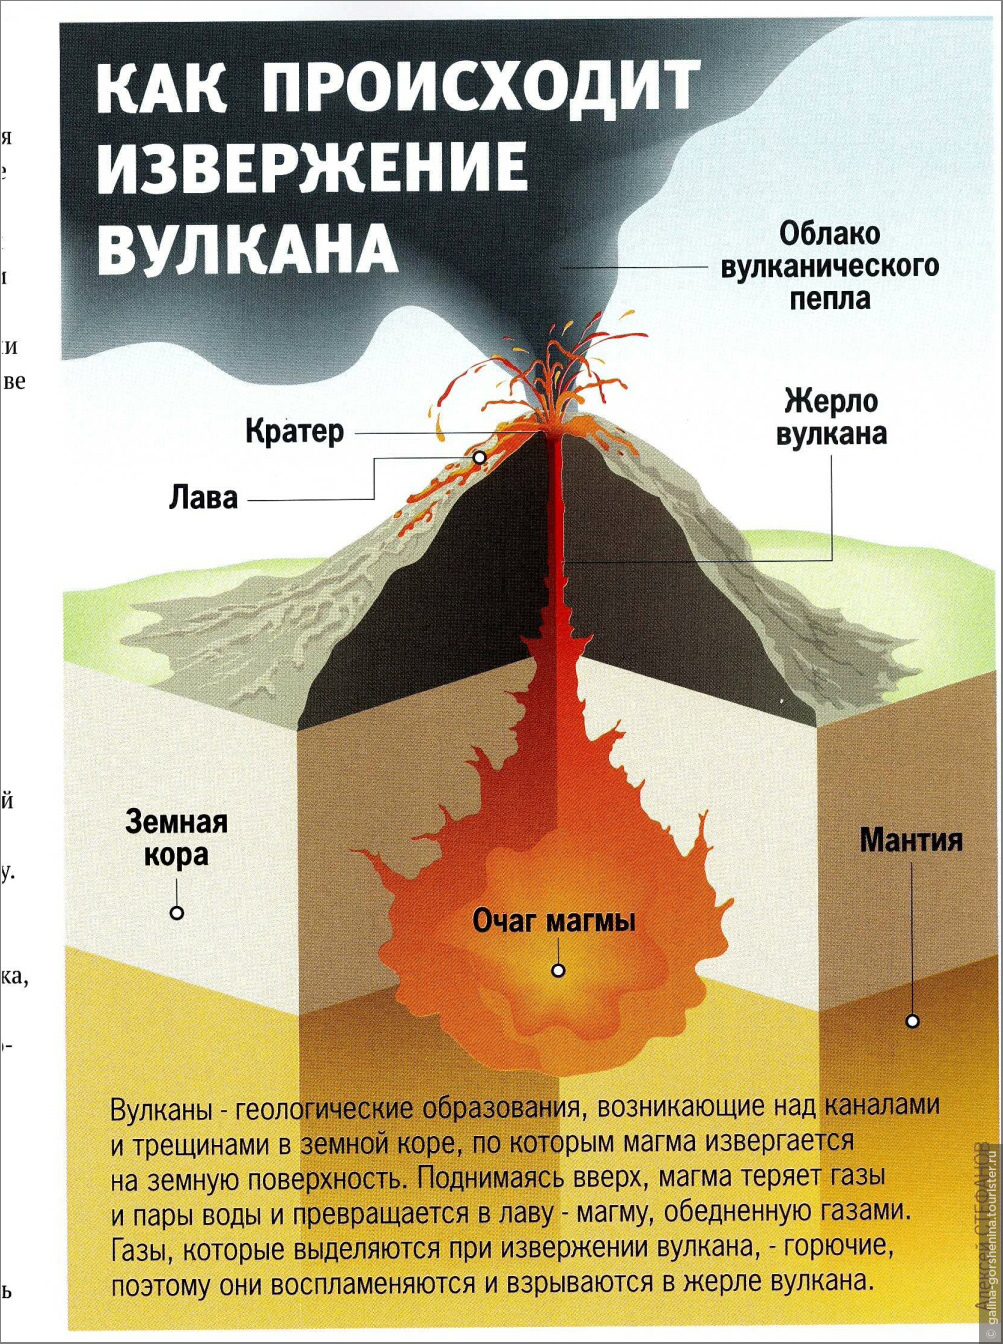 Образование вулканов и землетрясения. Процесс извержения вулкана. Как происходит извержение вулкана. Извержение вулкана схема. Строение вулкана.